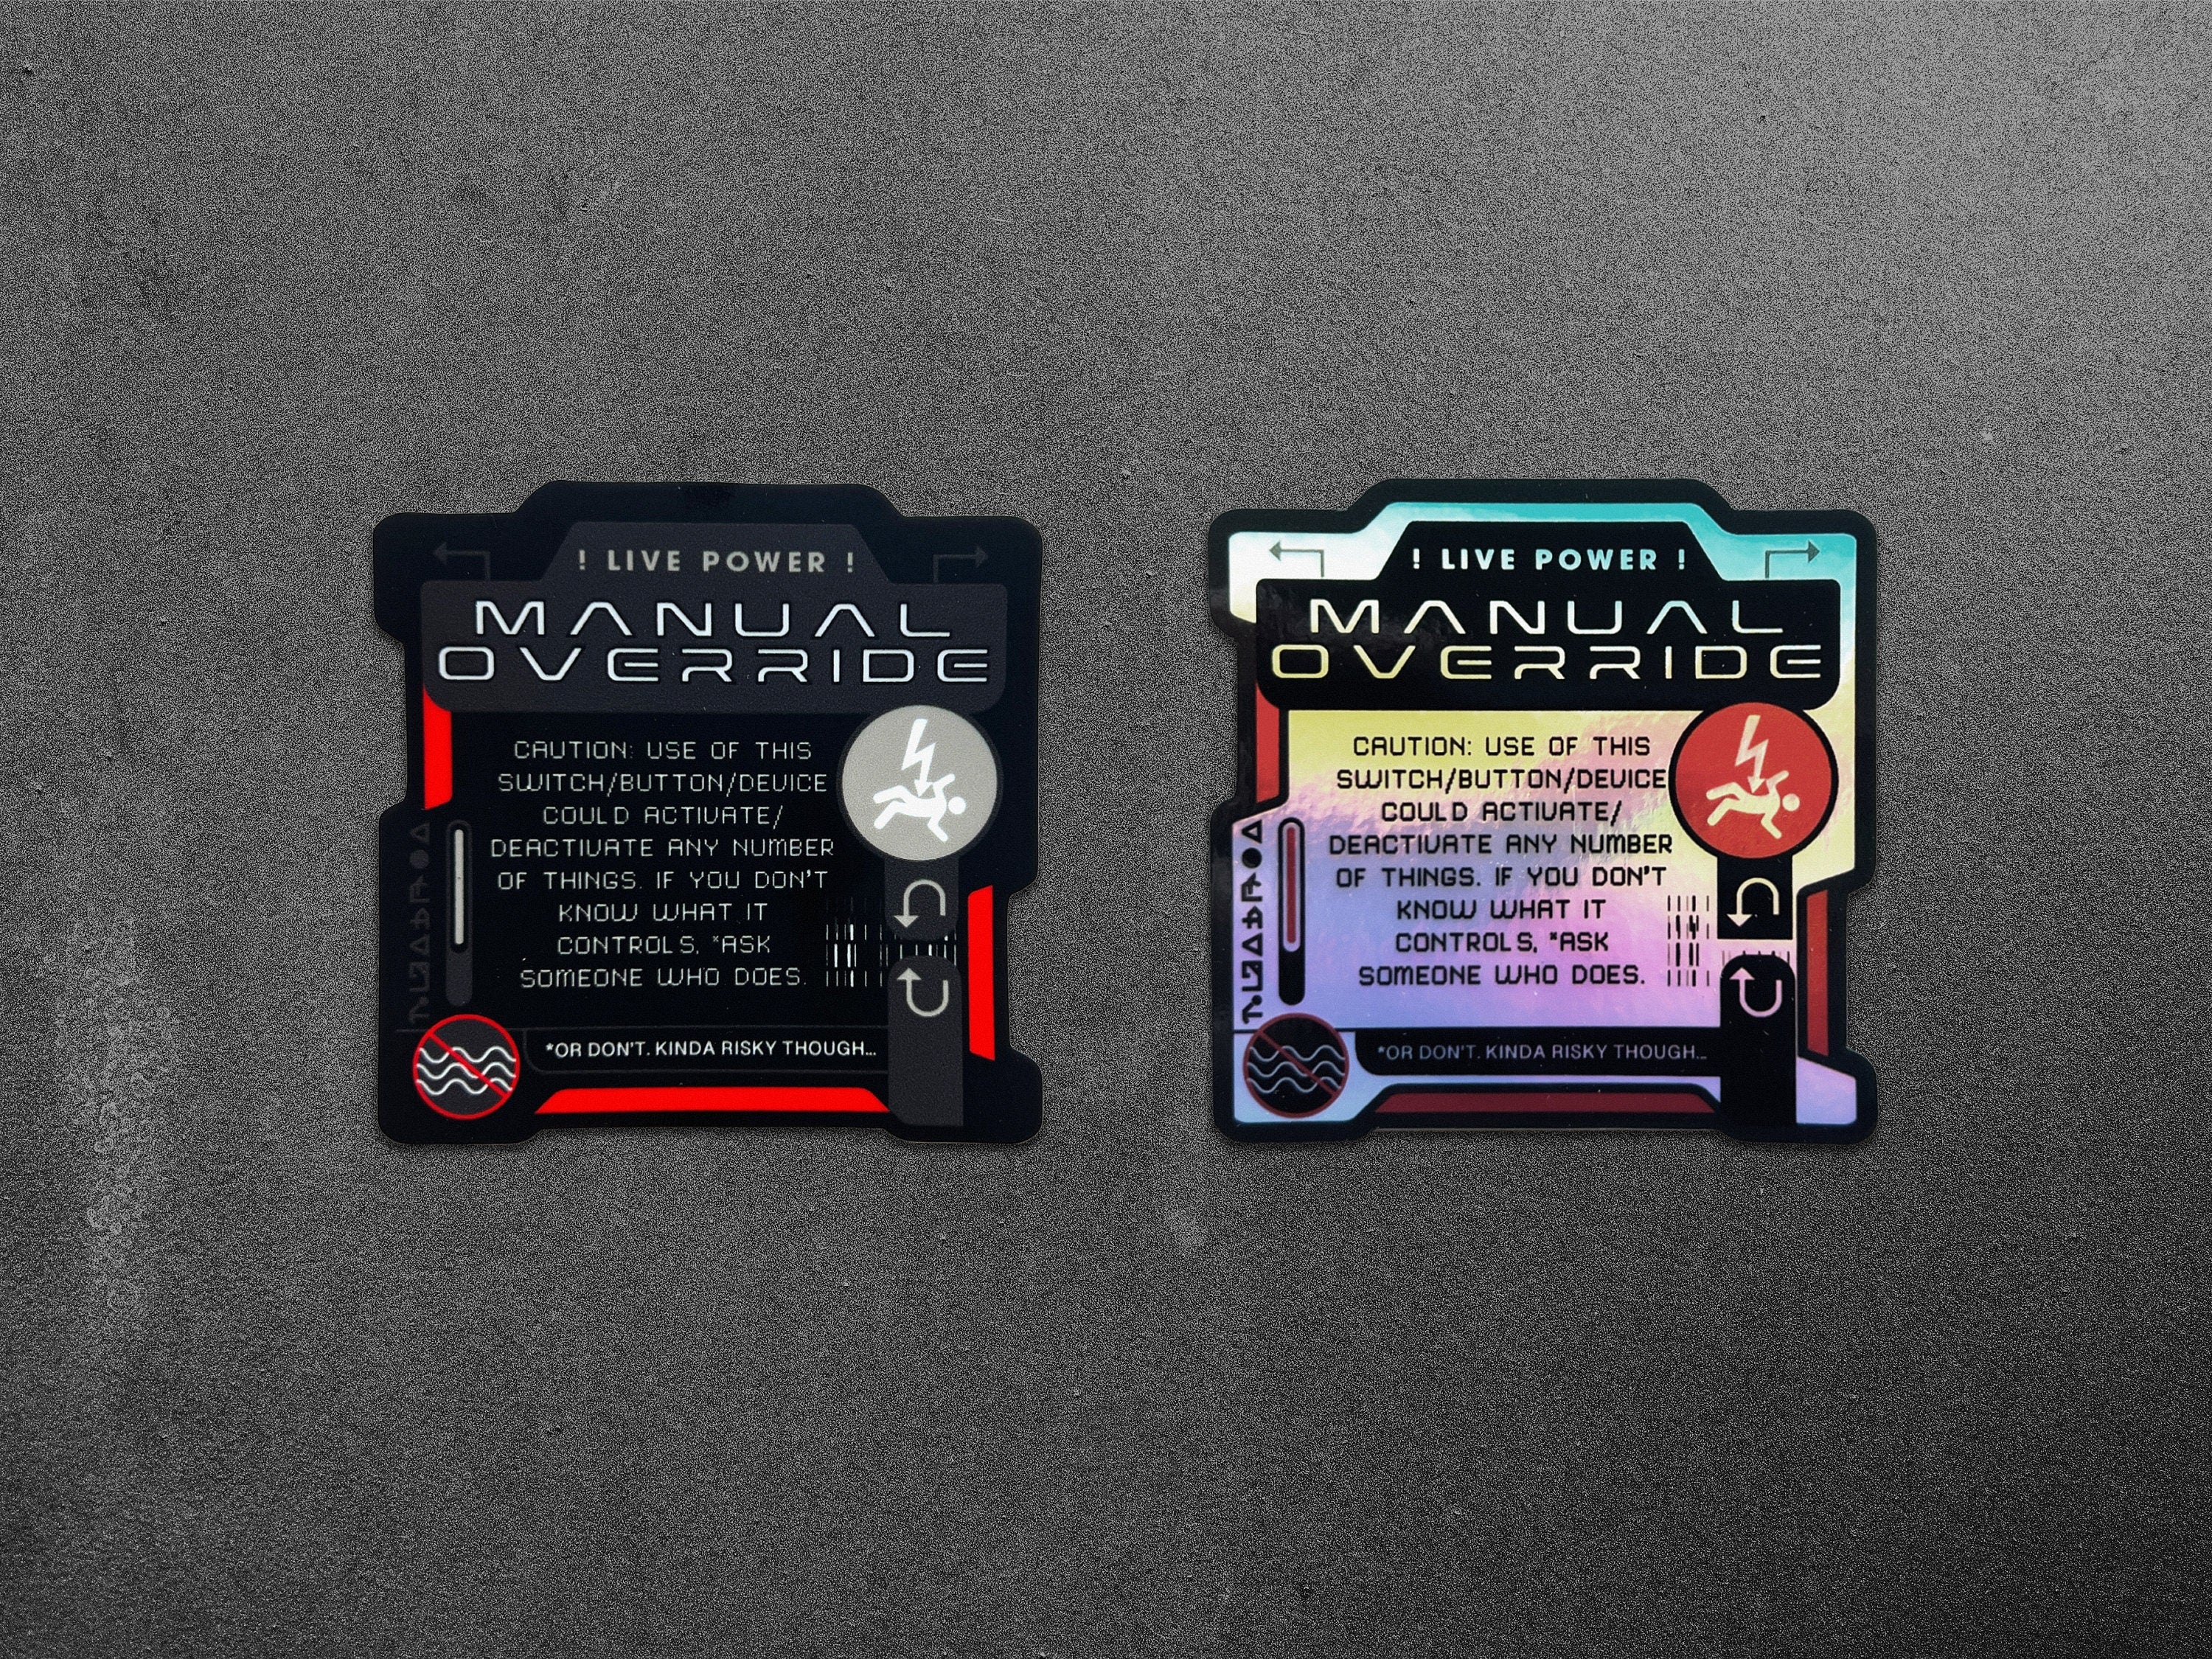 Manual Override! Holographic Vinyl Decal - Device Offline Cyberpunk Laptop Sticker - Futuristic Astropunk / Space Sci-Fi Prop Decal